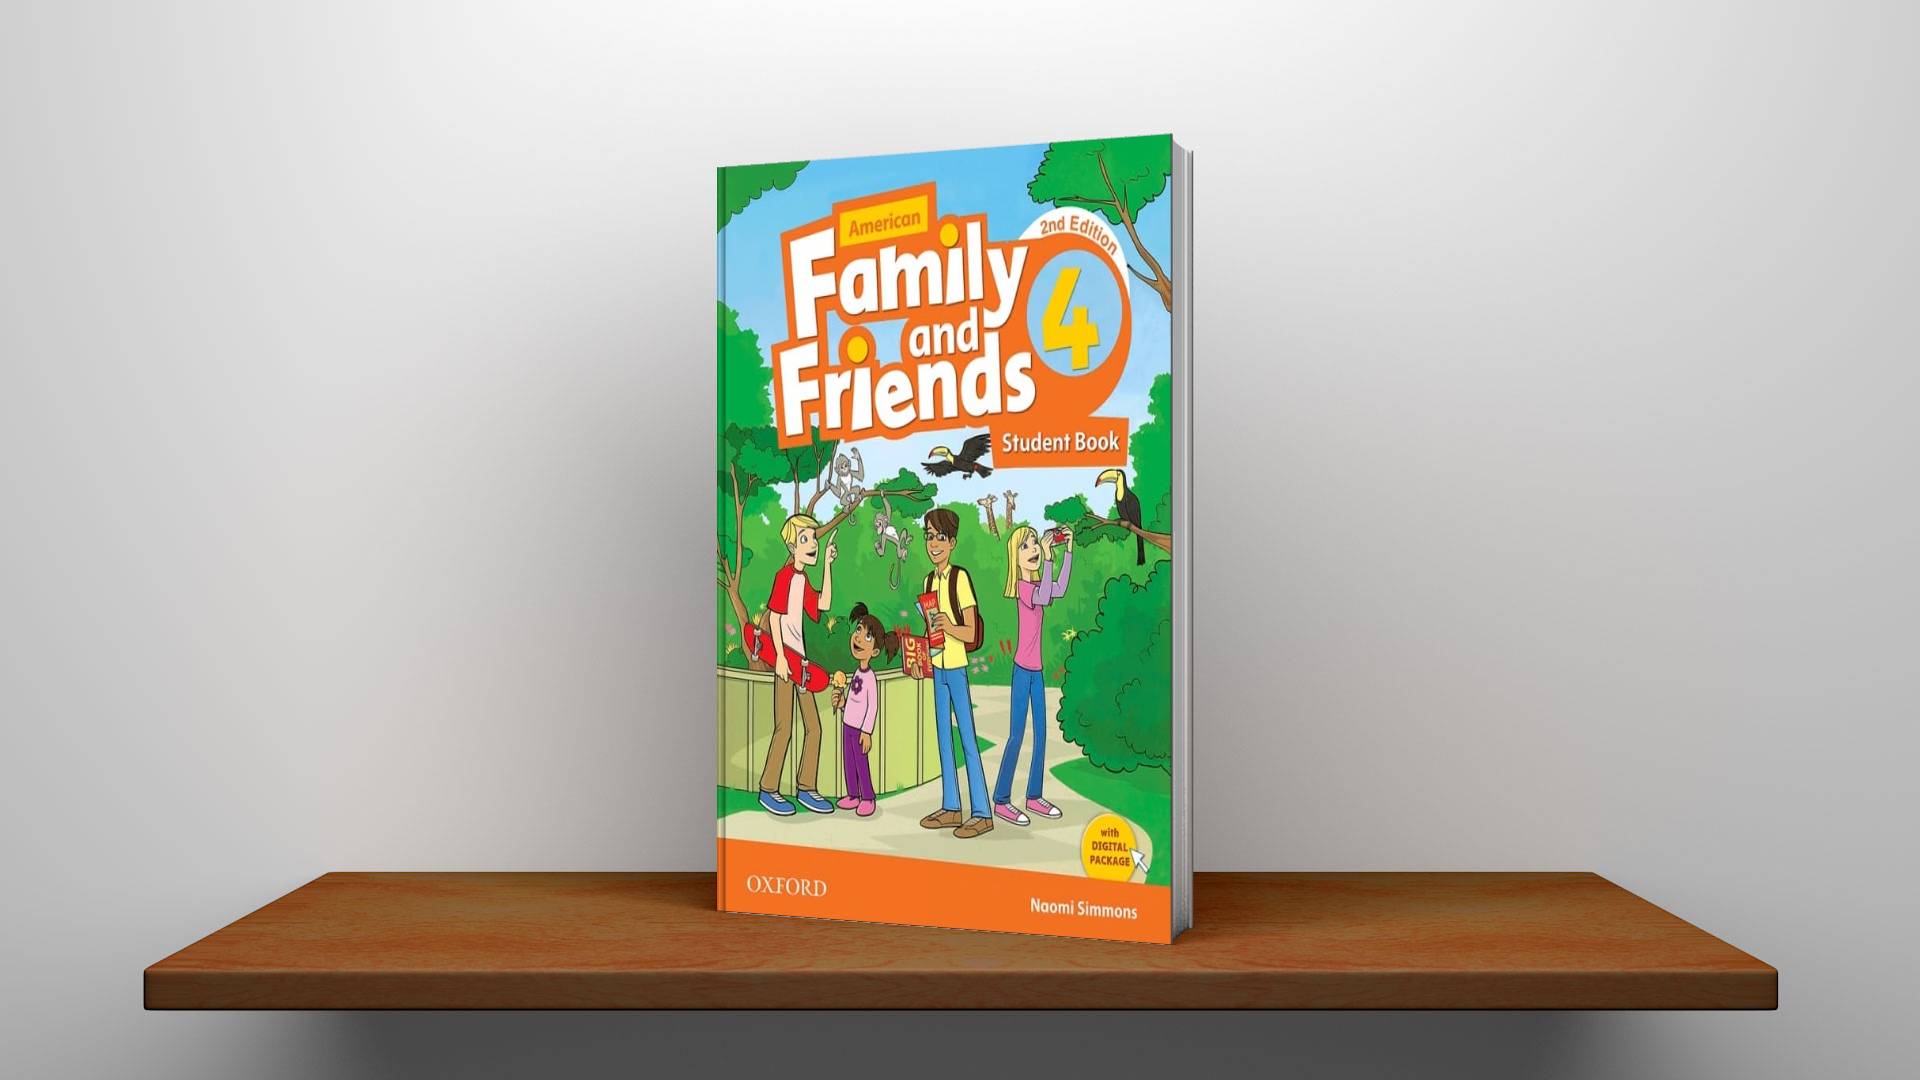 خرید کتاب زبان | کتاب زبان اصلی | American Family and Friends 4 2nd Edition | امریکن فمیلی اند فرندز چهار ویرایش دوم